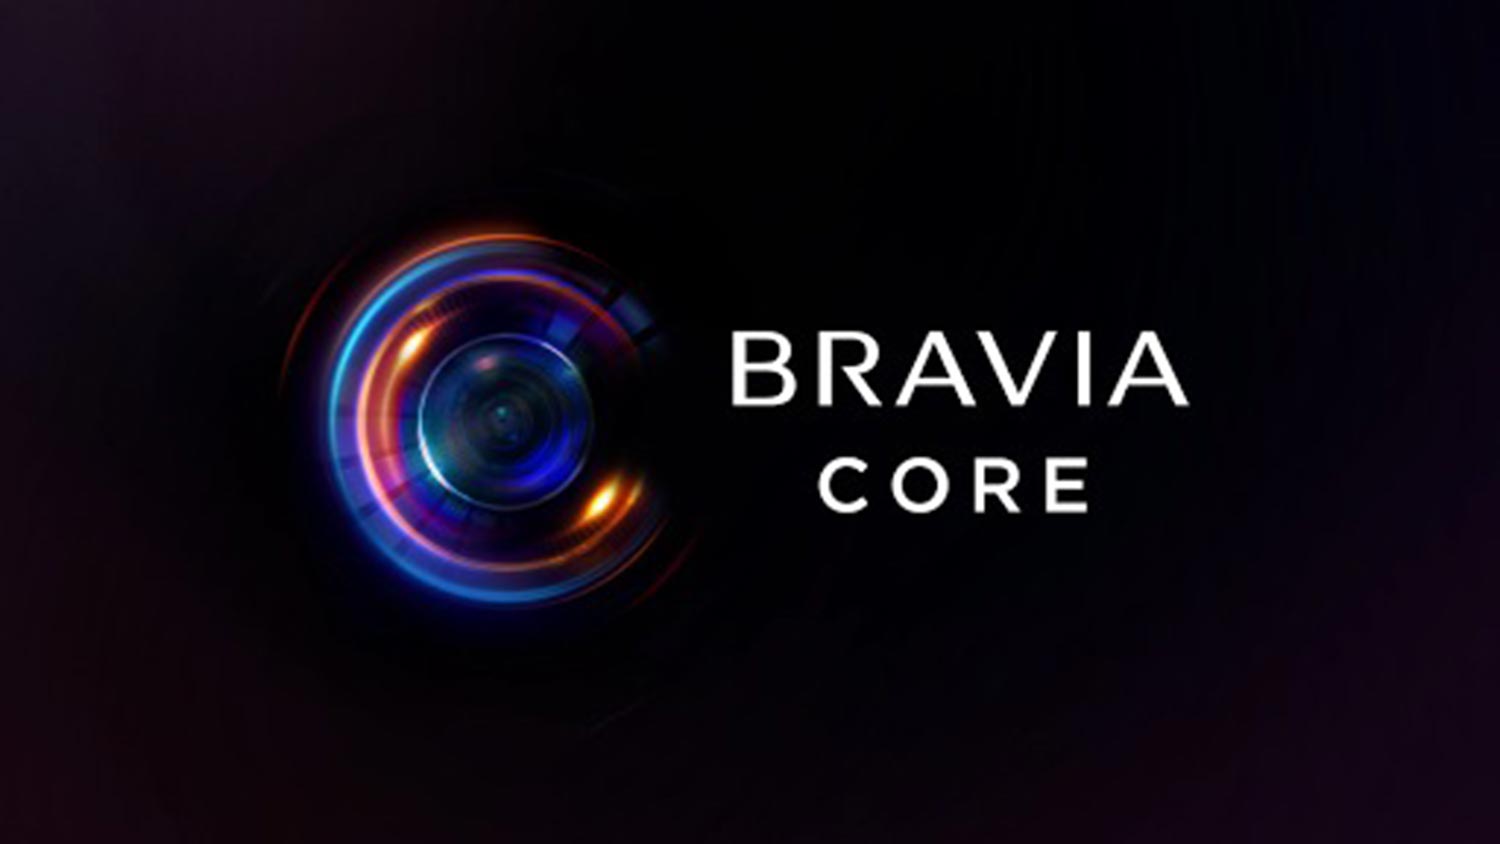 Perkhidmatan Penstriman Sony Bravia Core Kini Ditawarkan Di Malaysia